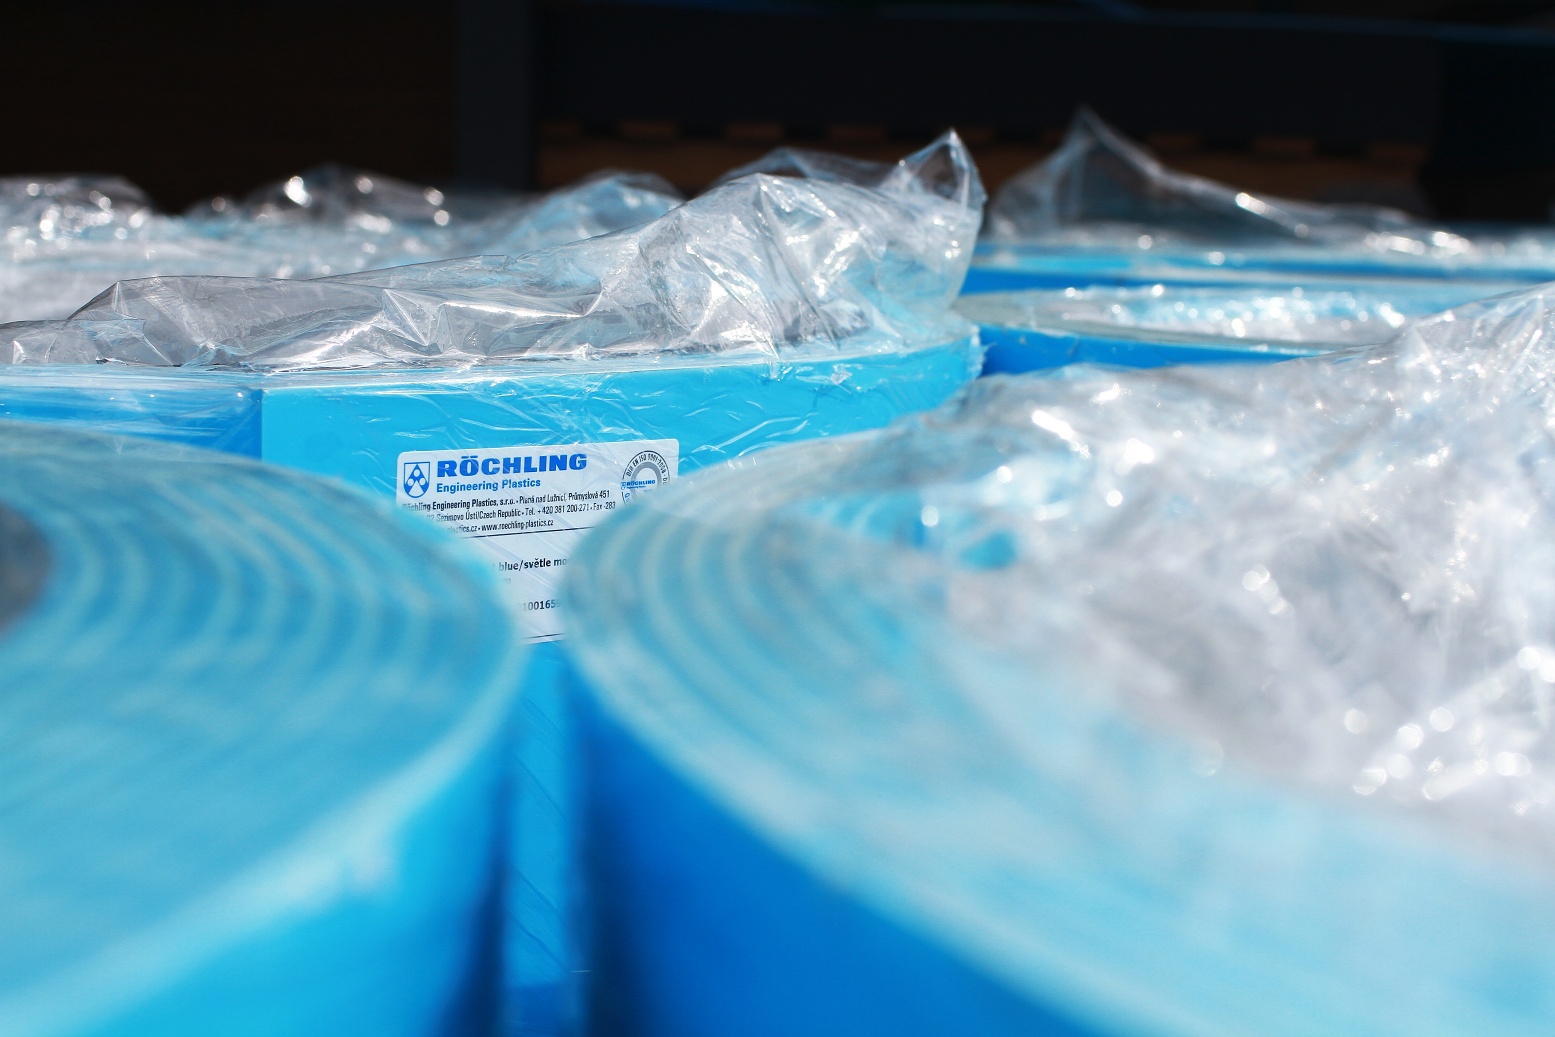 Materiál pro výrobu plastových bazénů - Rochling